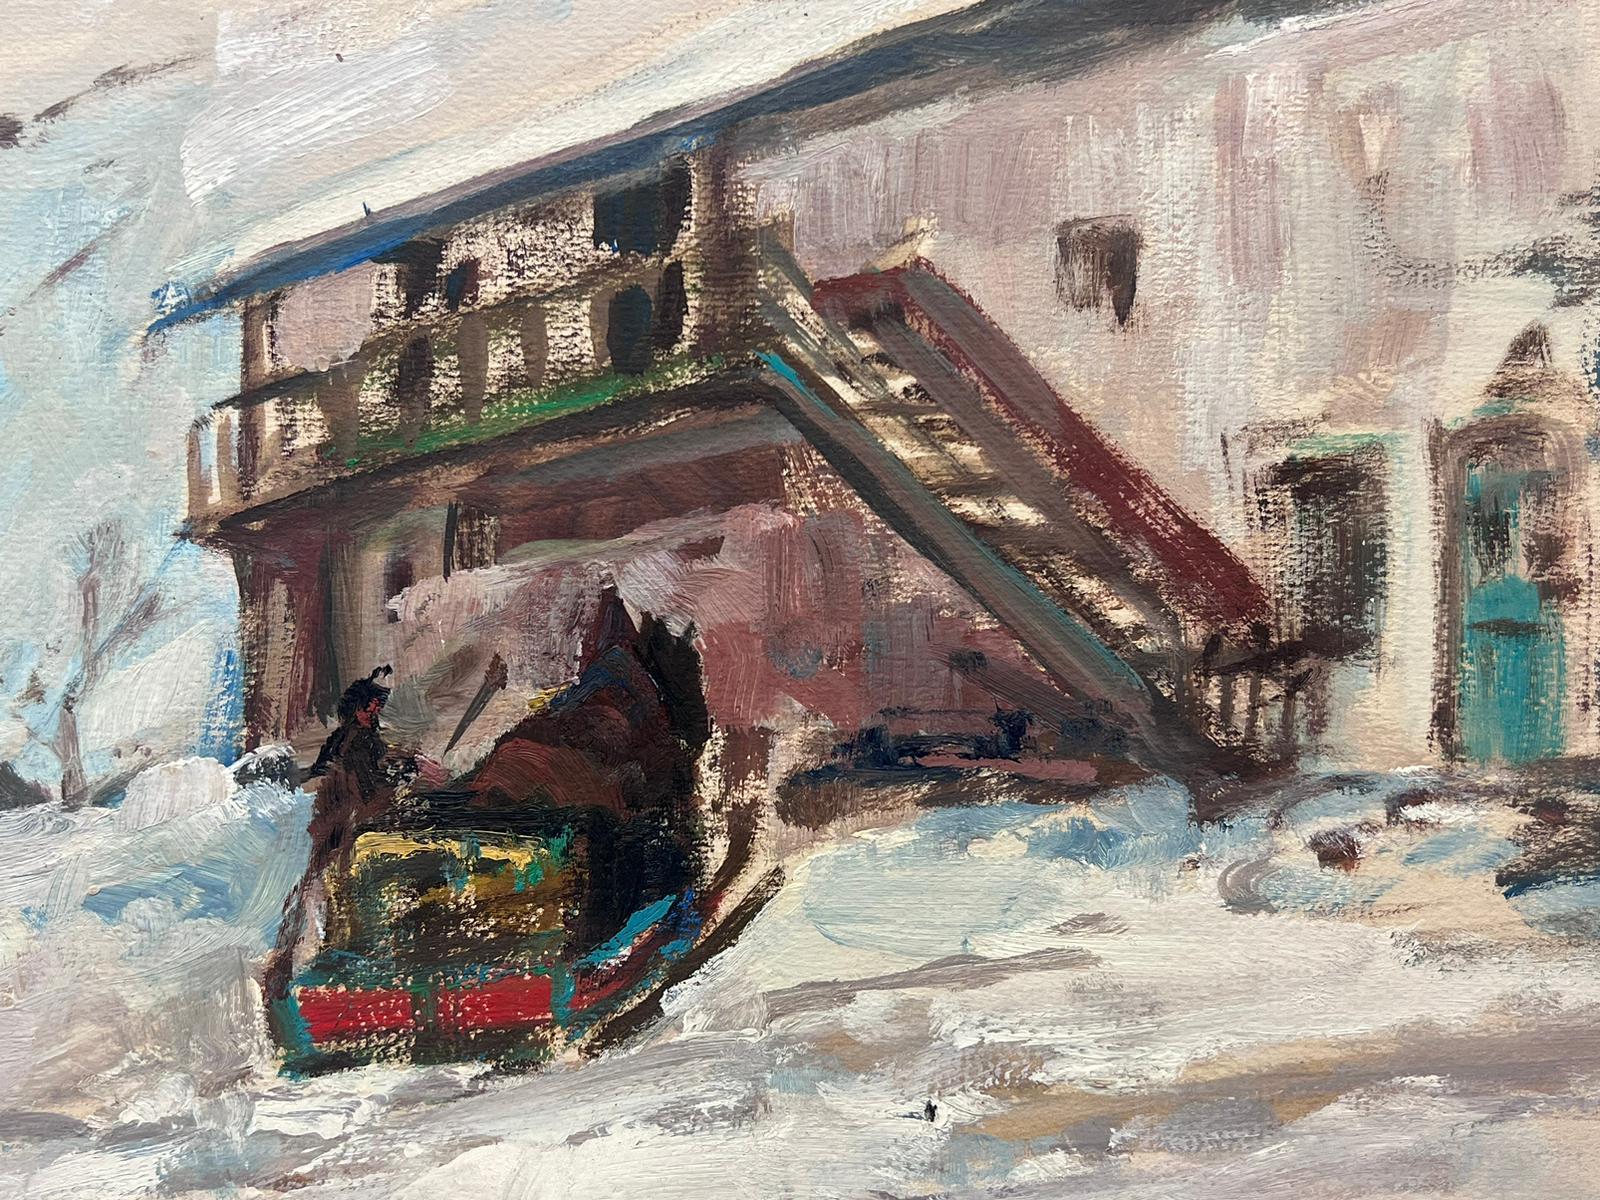 Figuren in Winter-Schneeflocken-Ski Chalet-Landschaft, Vintage, Französisch-impressionistisches Öl – Painting von Leon Hatot